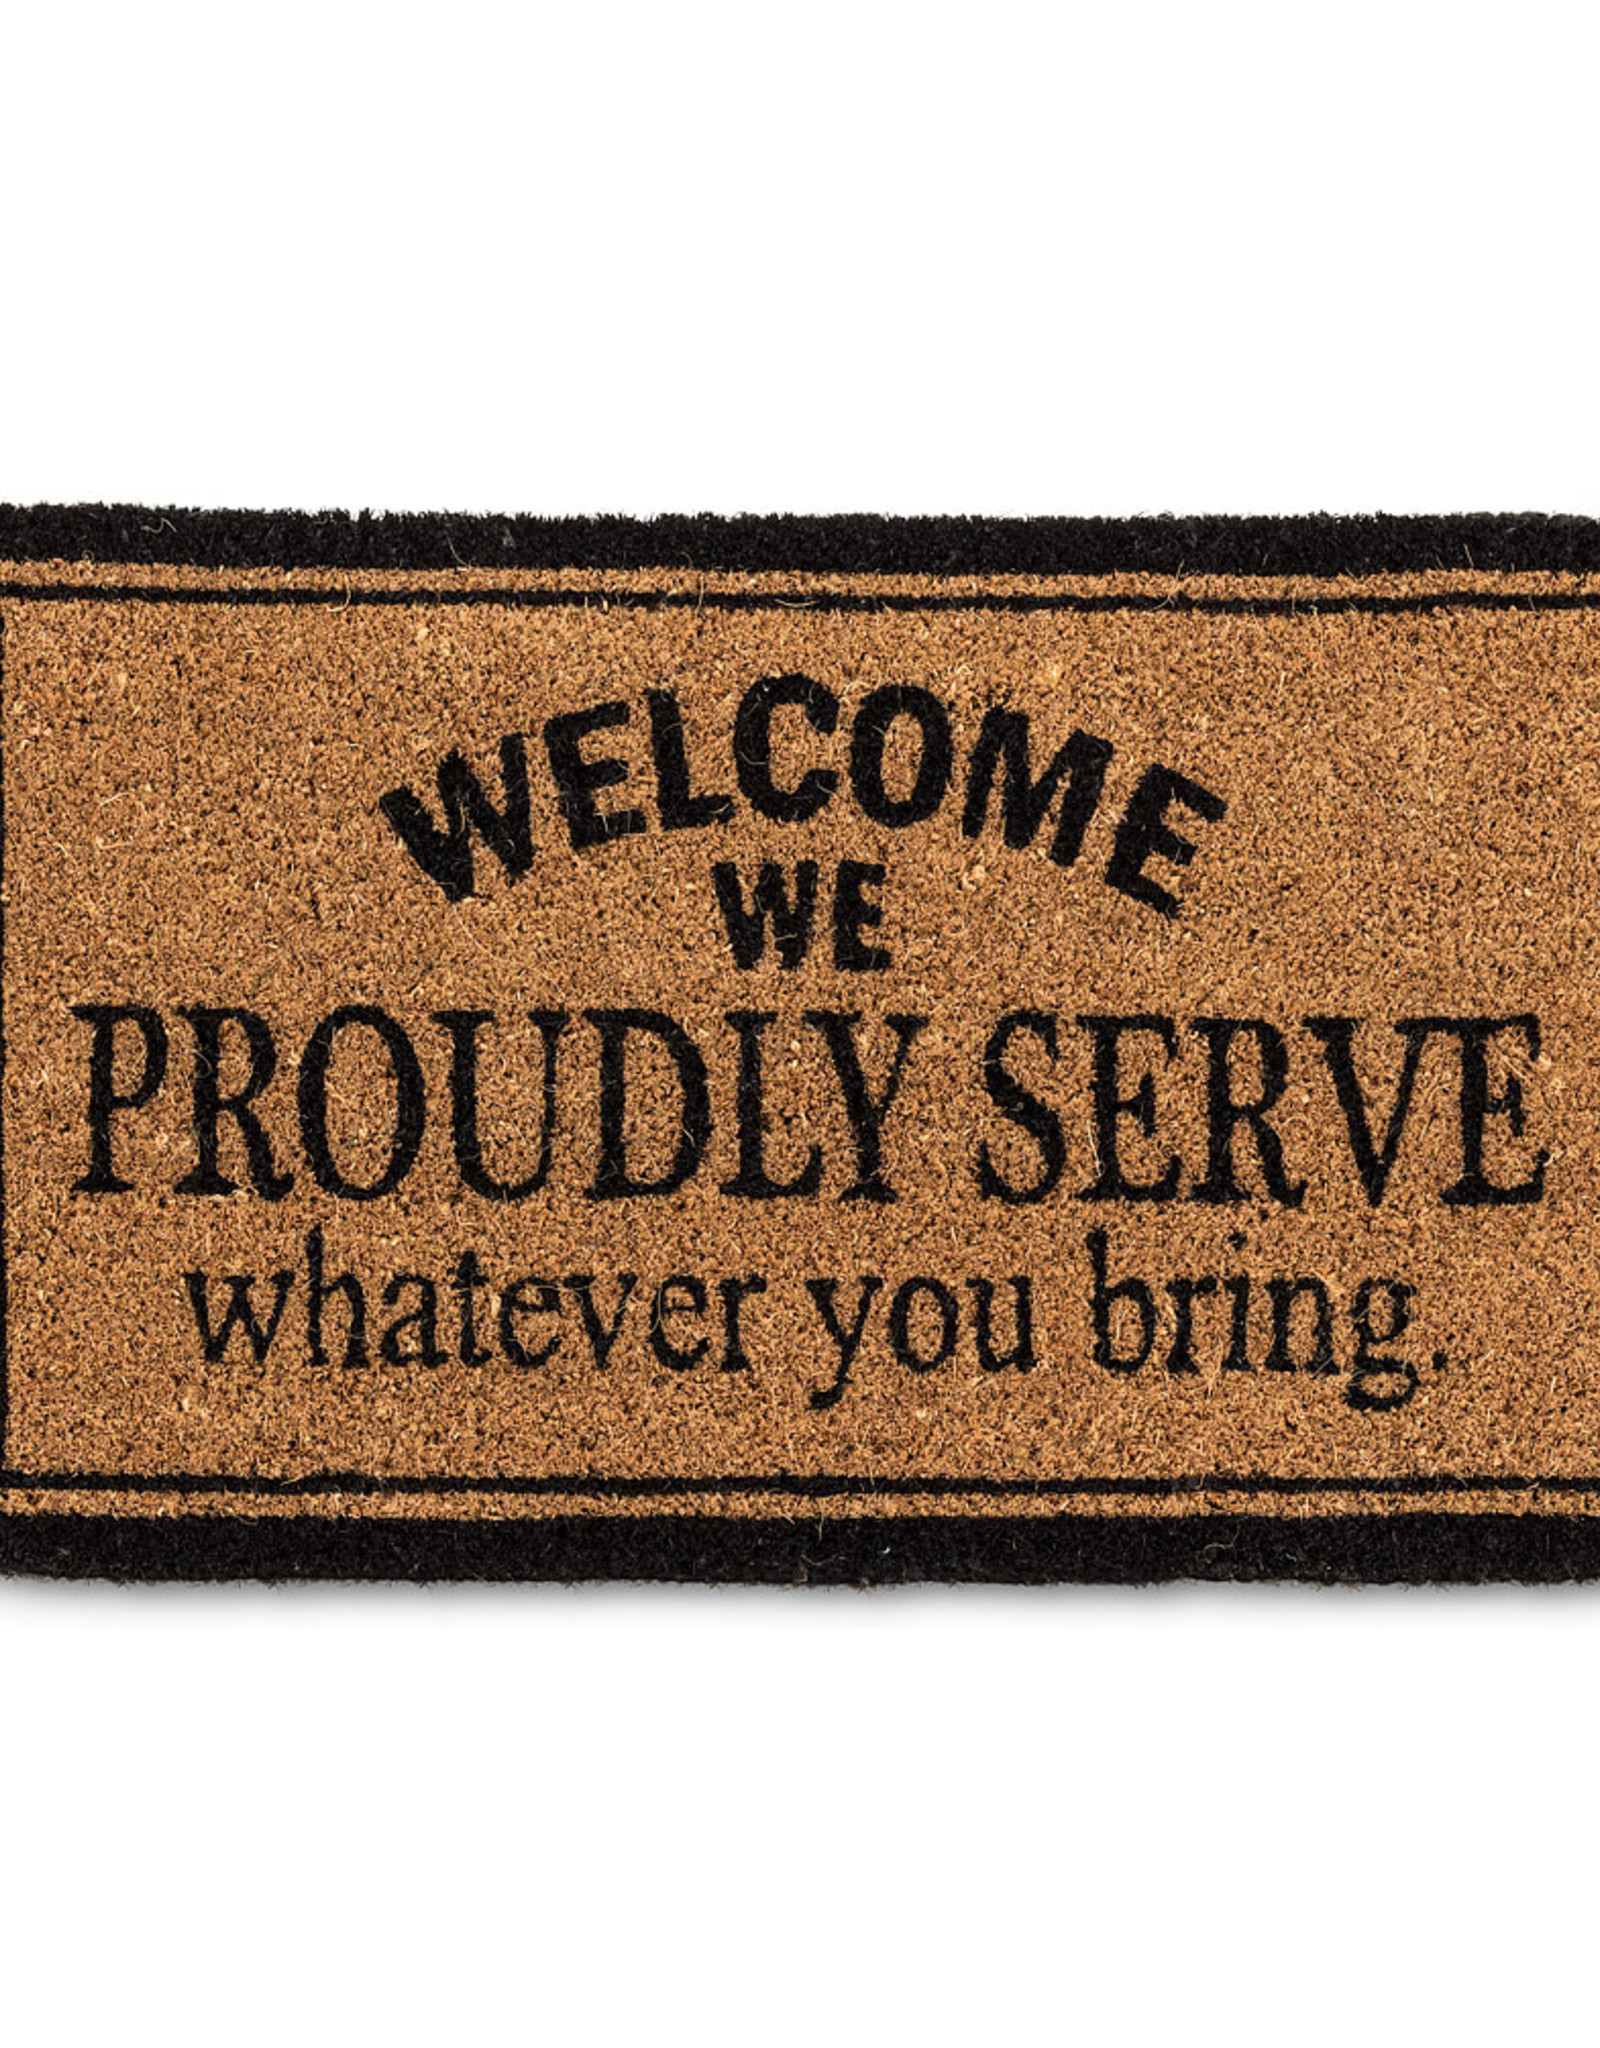 We Proudly Serve Doormat - 18x30 inch